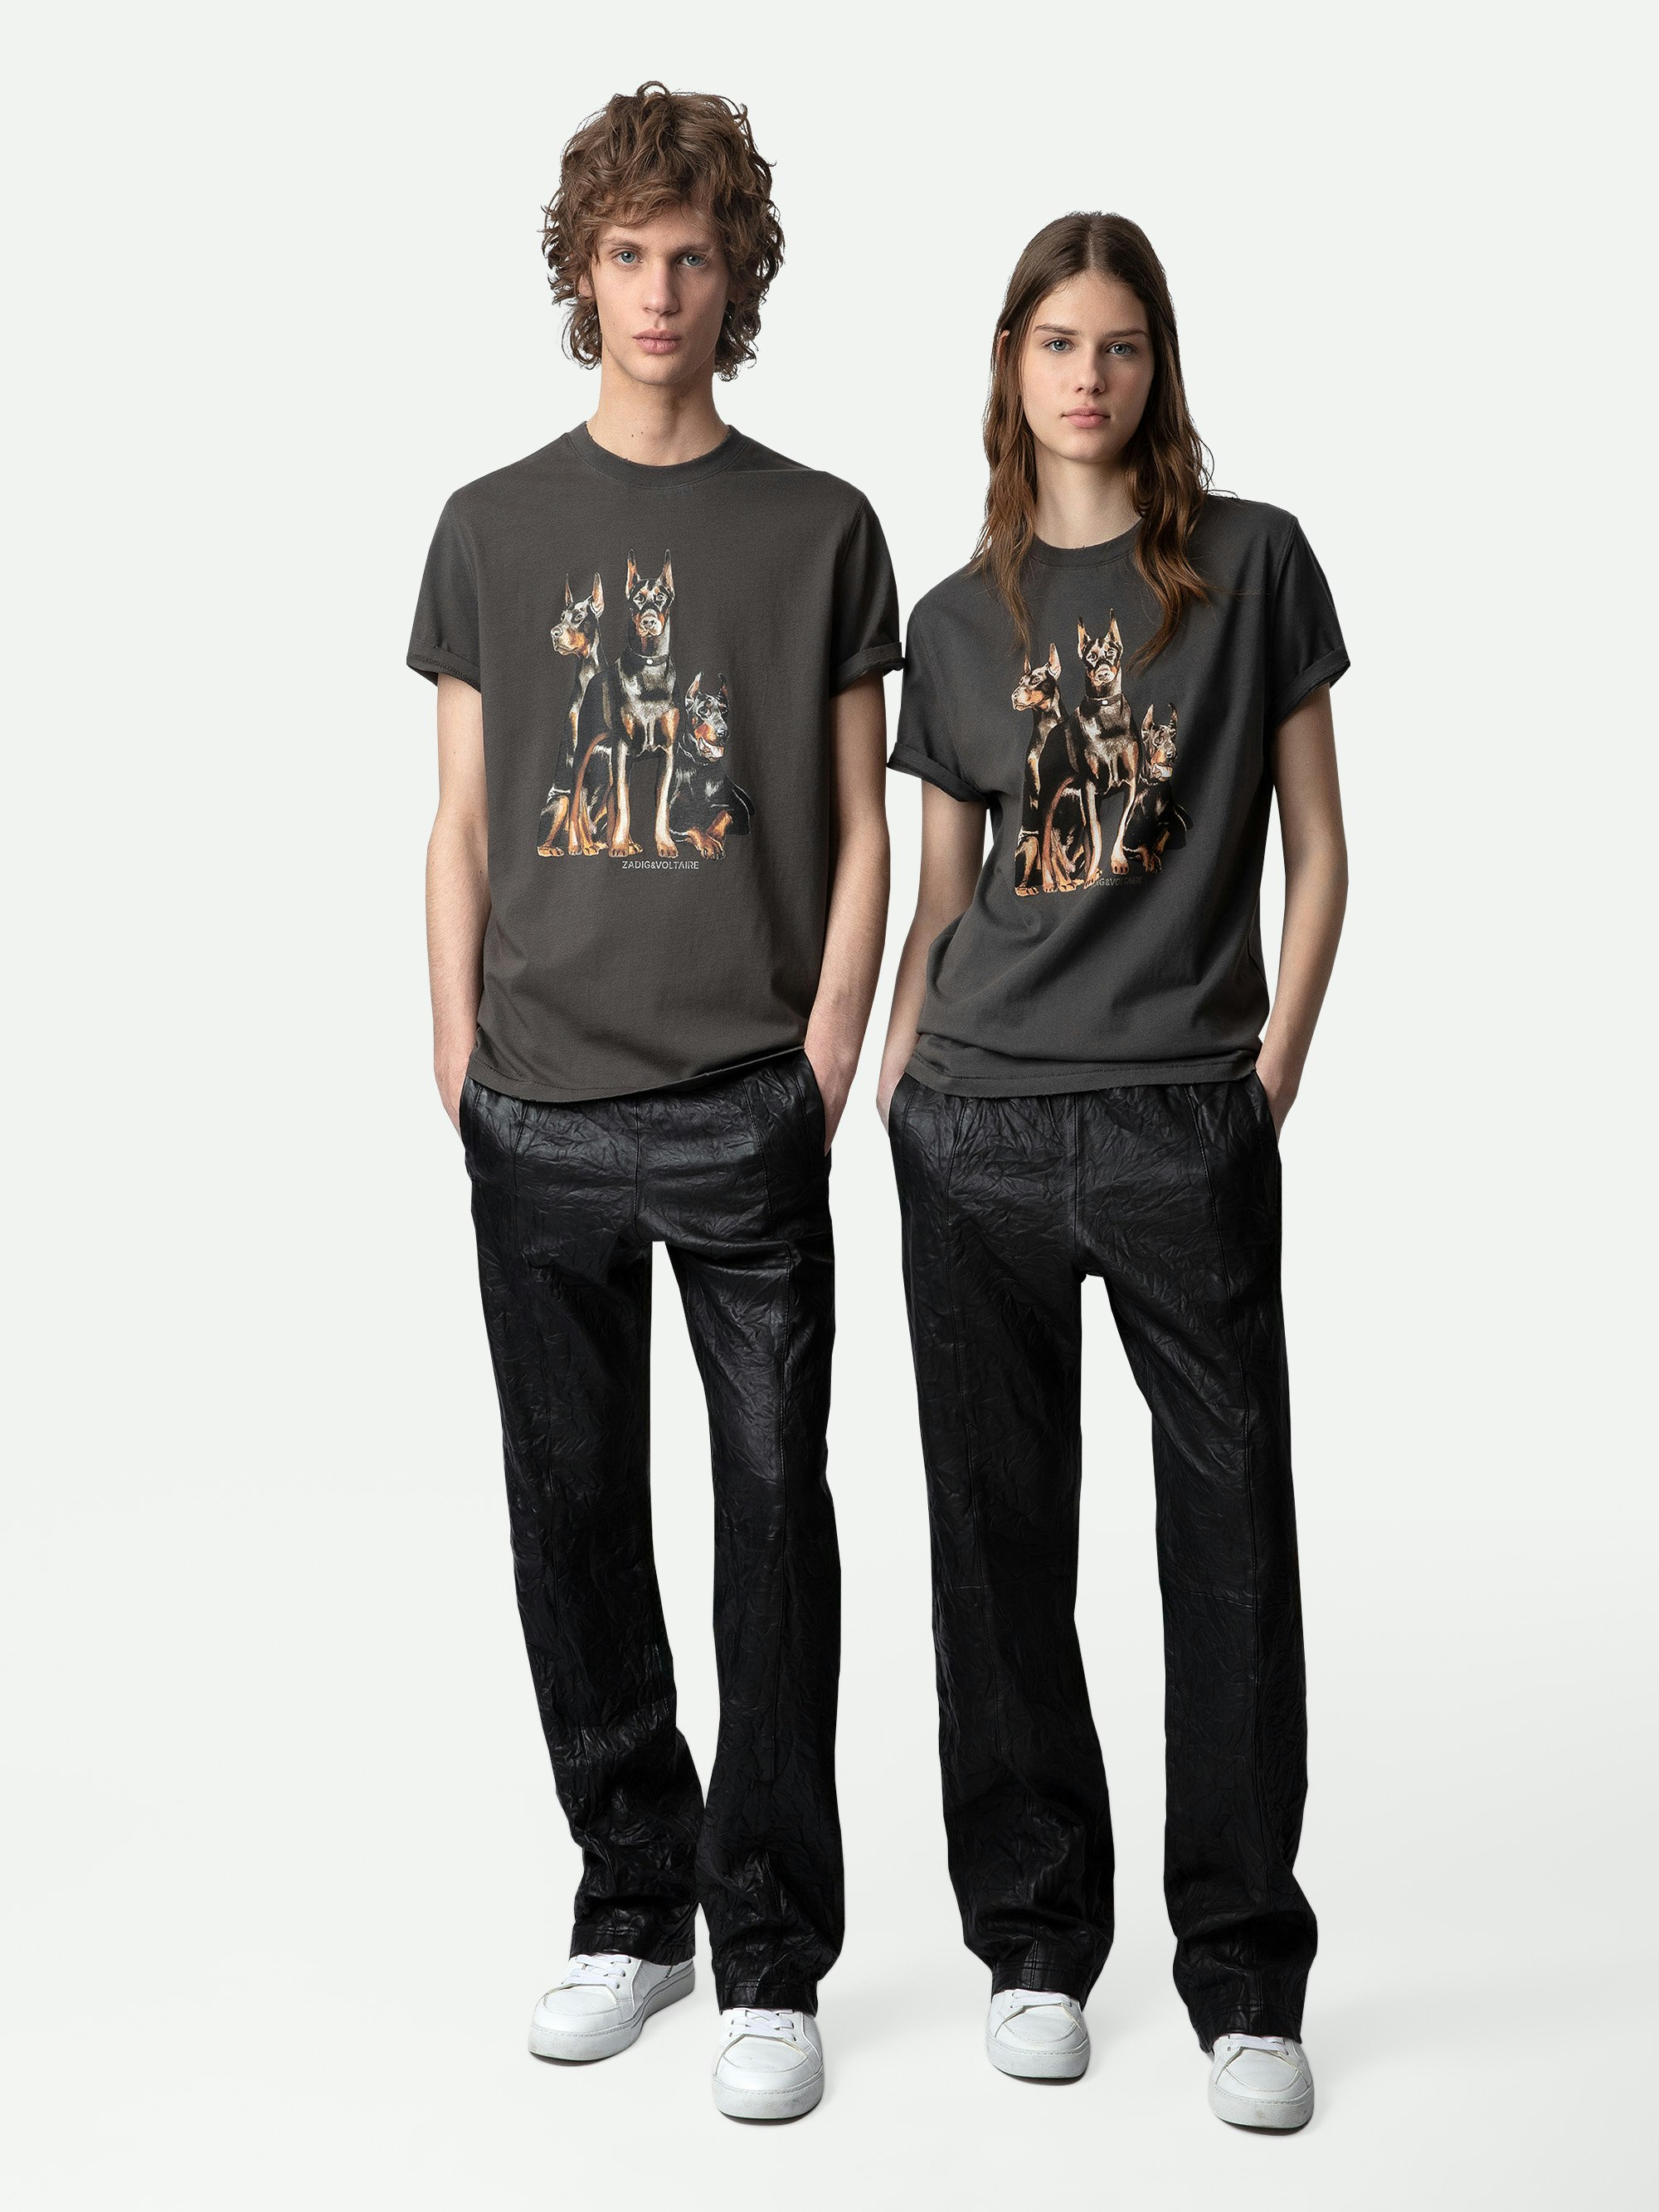 T-Shirt Jimmy - Braunes Kurzarm-T-Shirt aus Baumwolle mit Dobermann- und Concert-Prints.